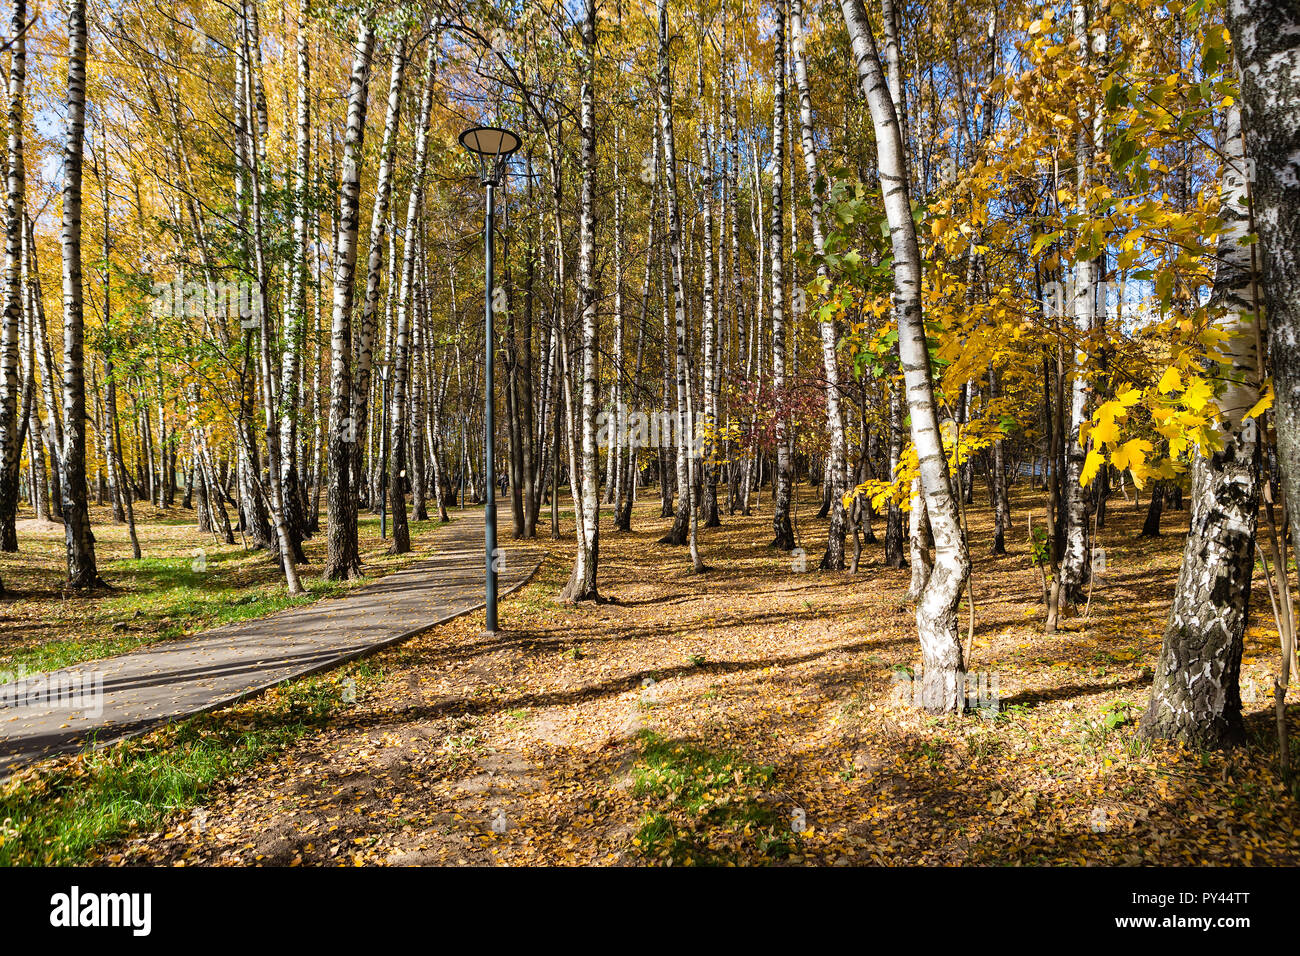 Autumn fall season in a golden birchwood Stock Photo